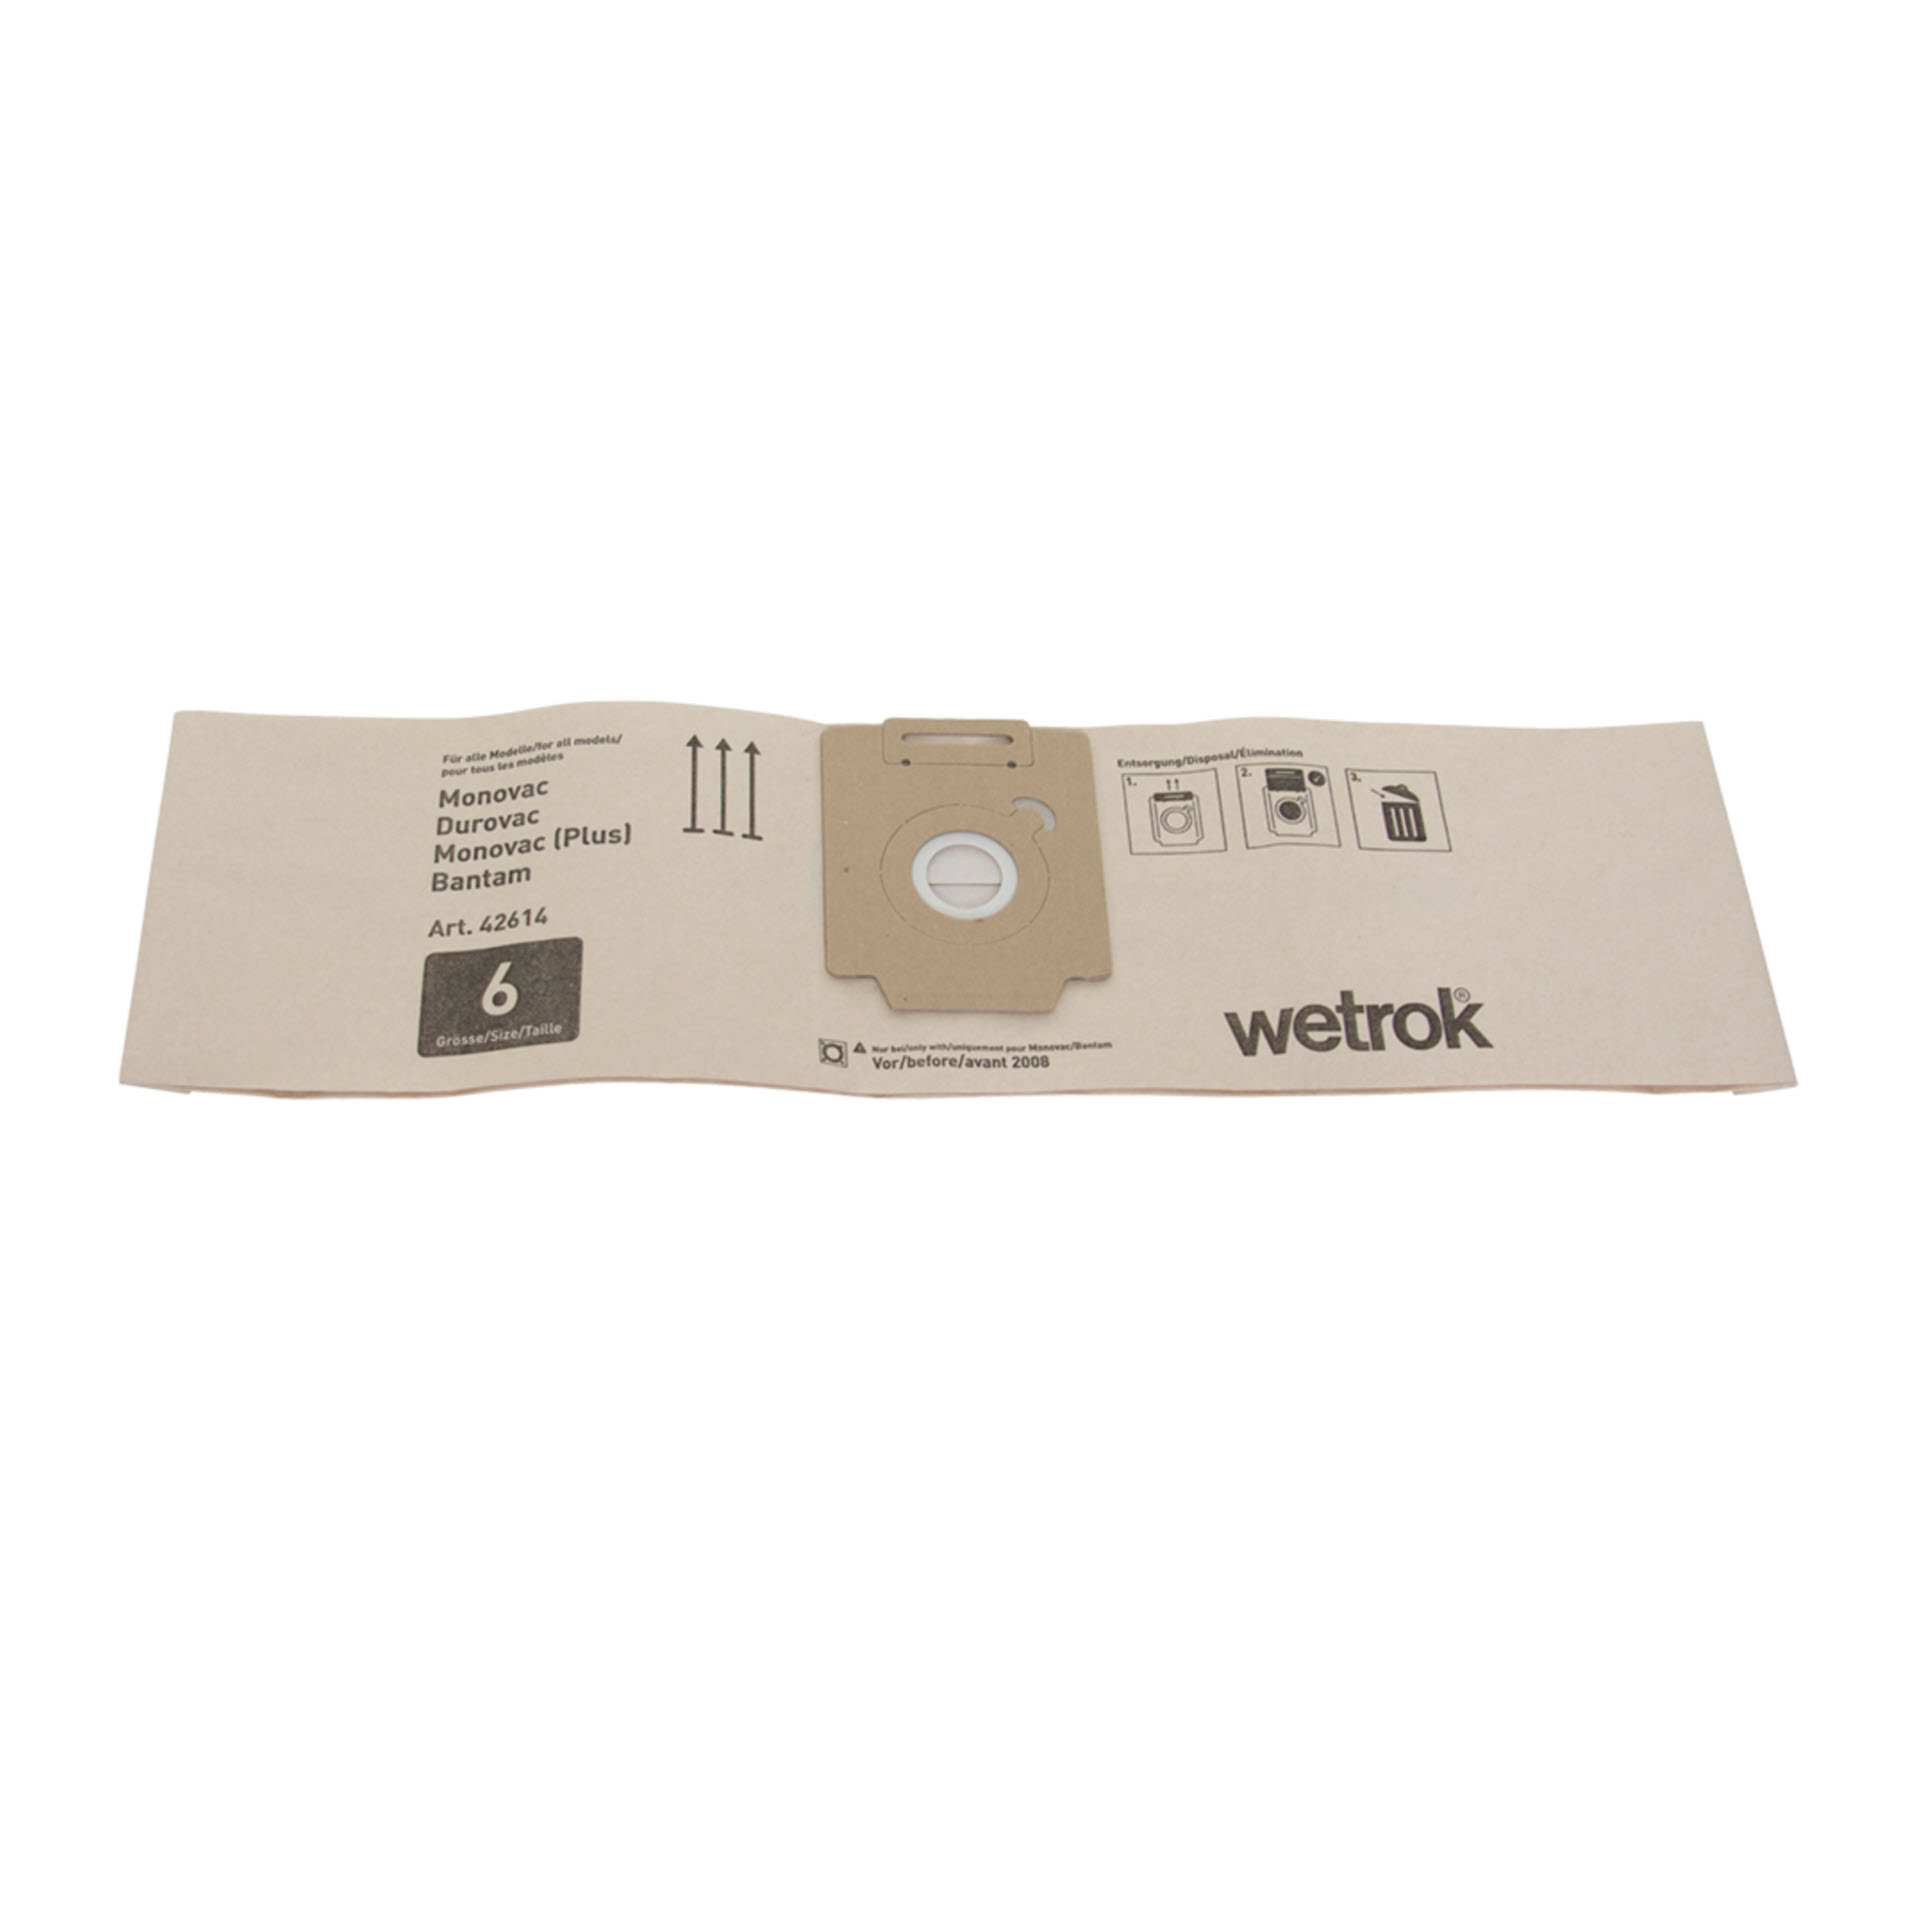 Wetrok Papiersack Mono/Duro 6 Liter - Pack mit 10 Stück